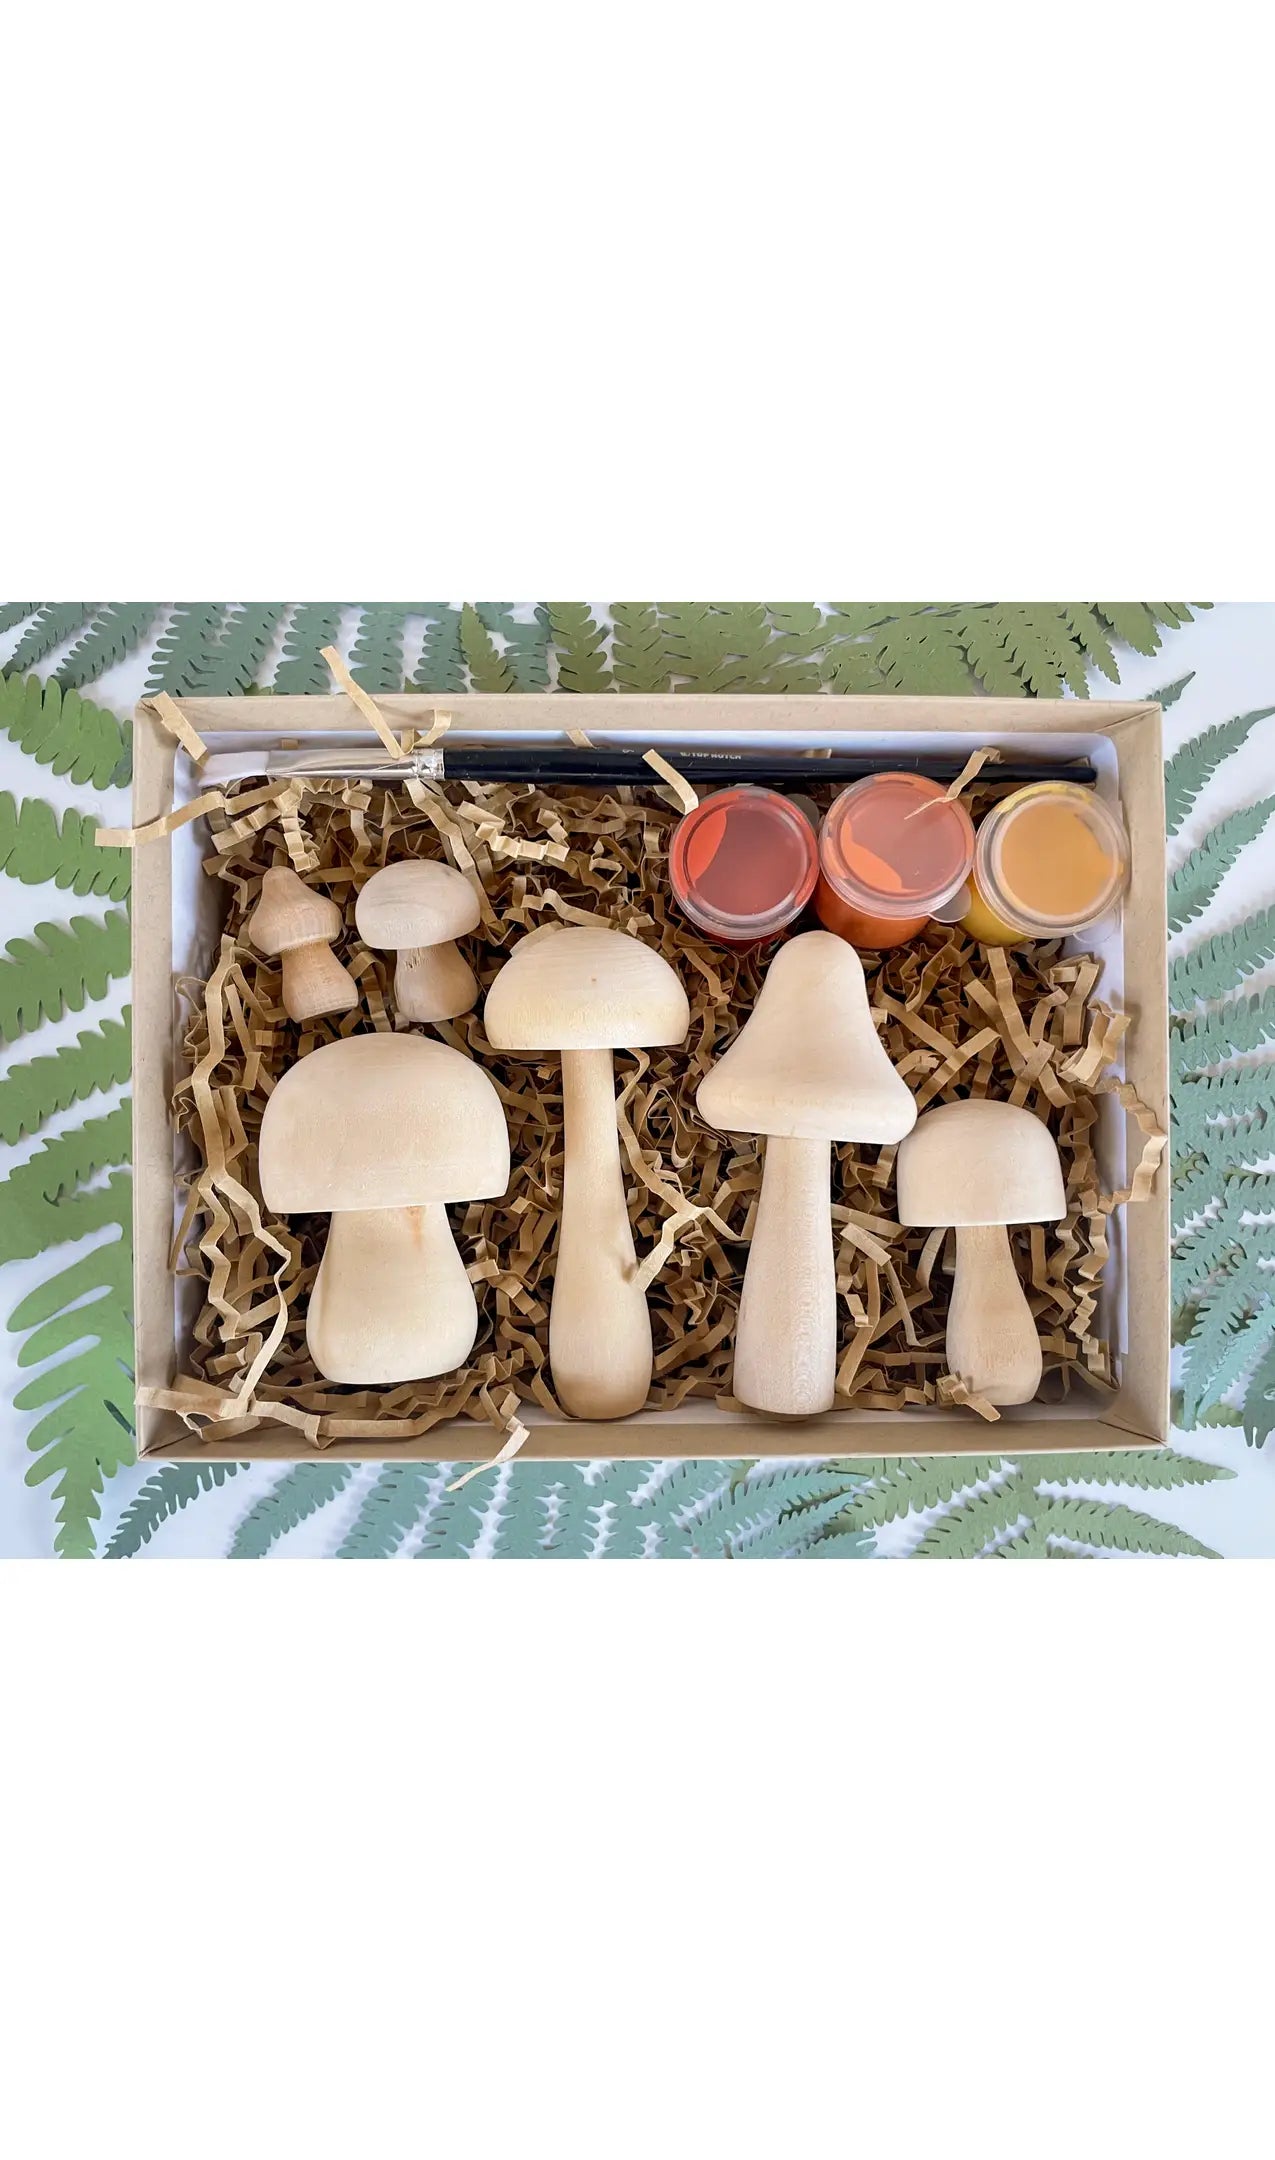 diy wooden mushroom painting kit by Bramble Workshop